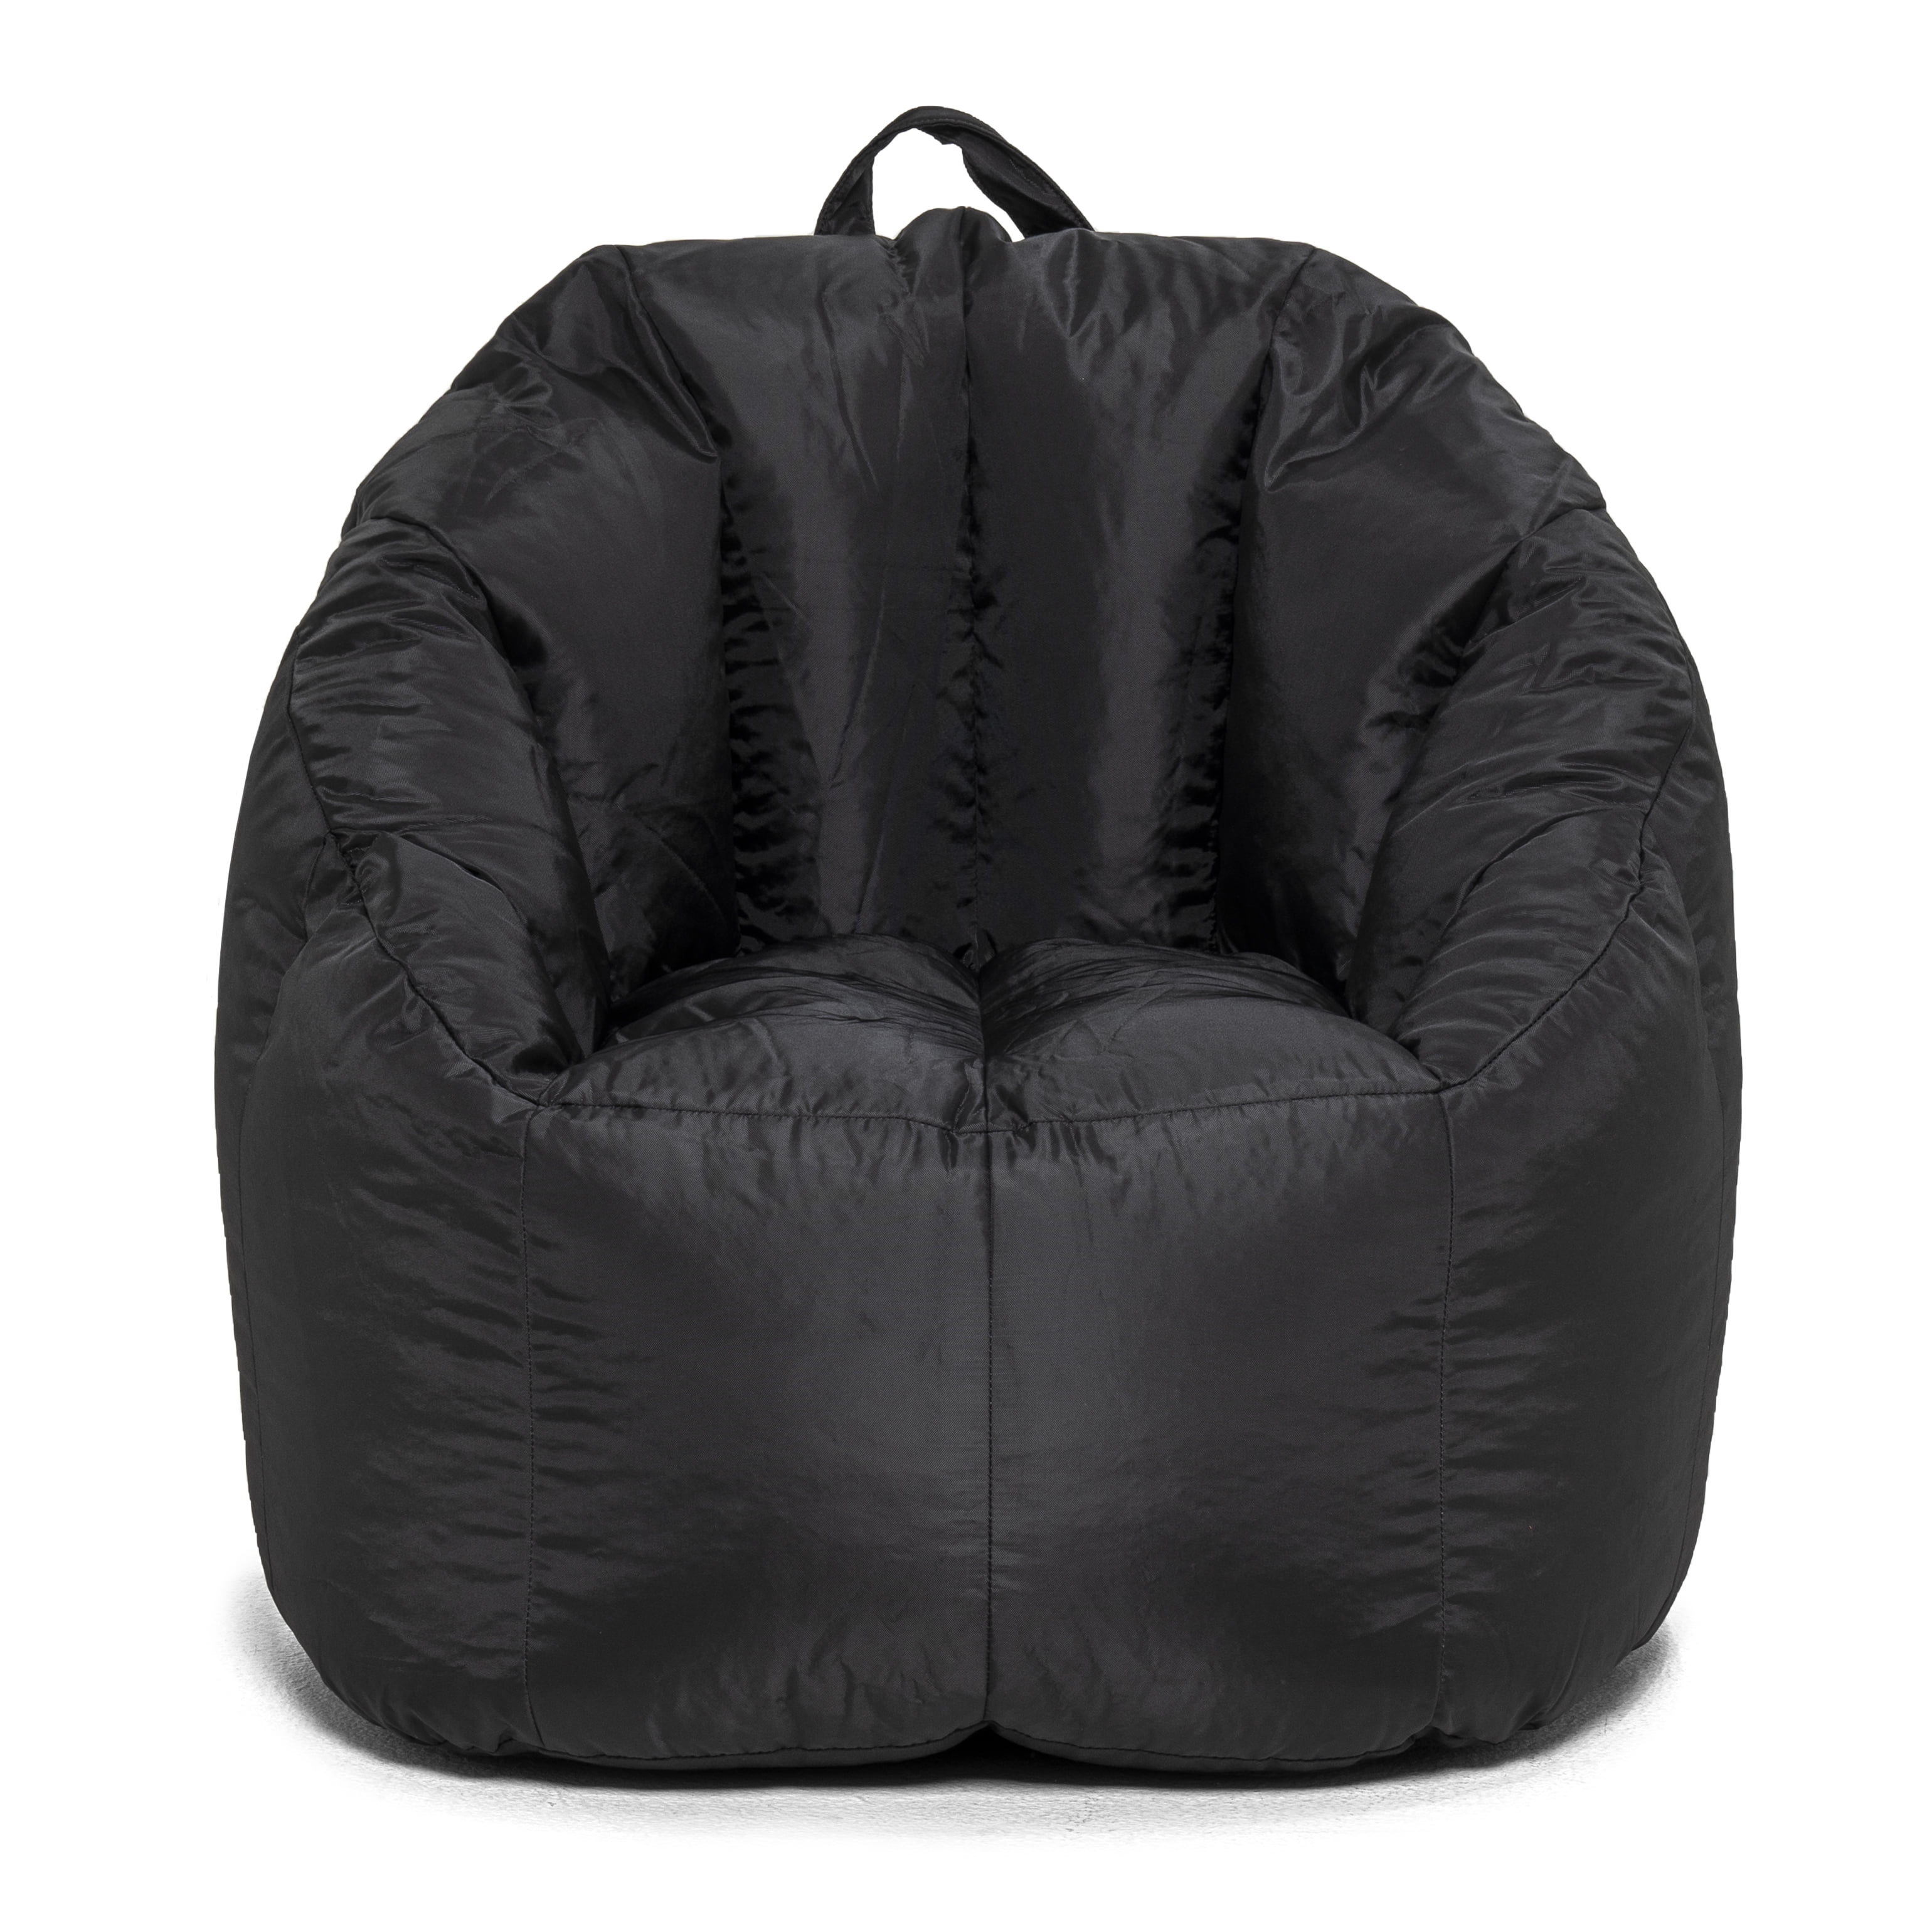 Big Joe Milano Bean Bag Chair Comfort For Kids & Adult Black 